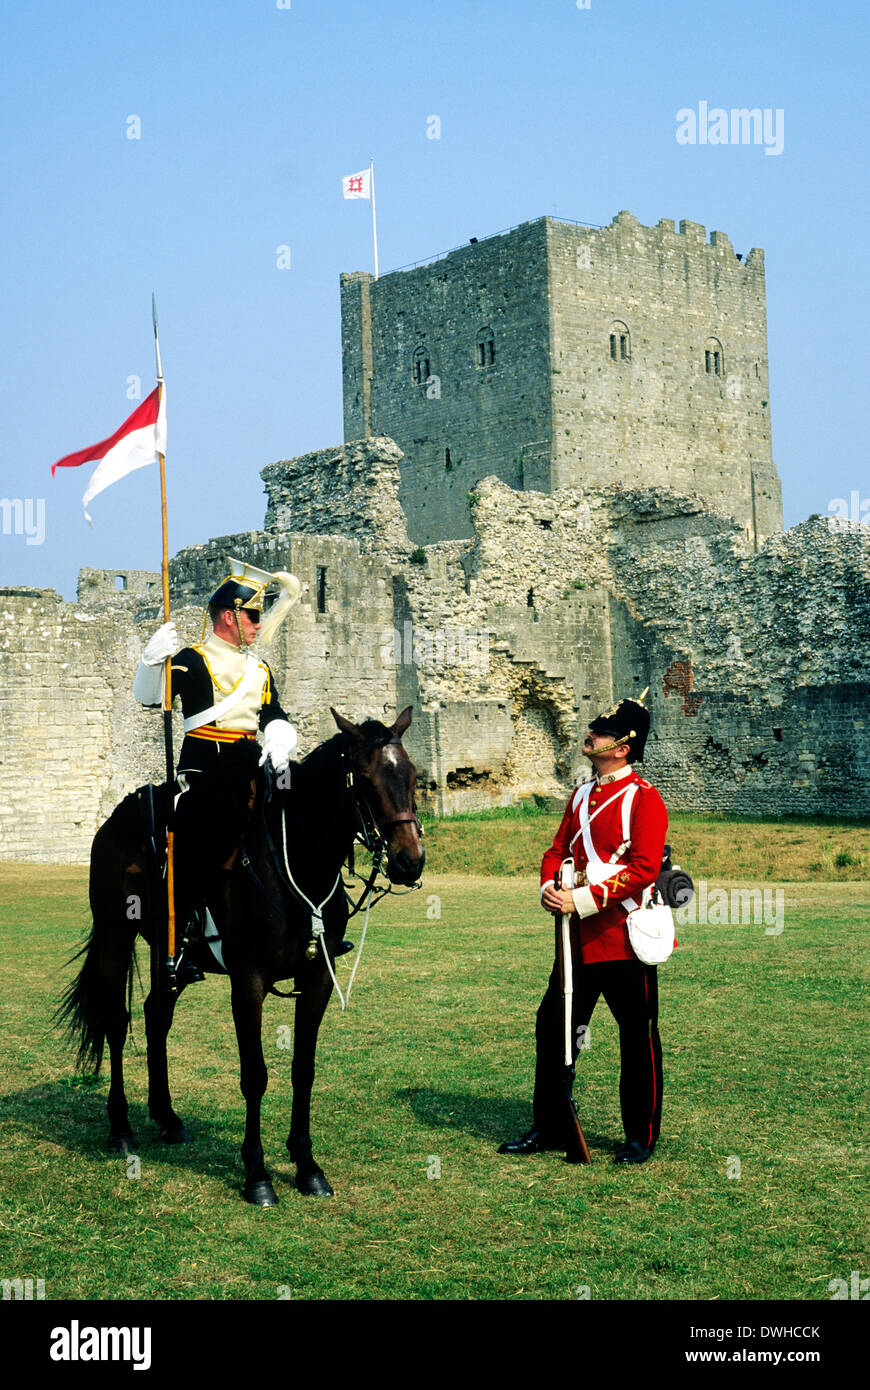 Portchester Castle, Hampshire, fin du xixe siècle, militaire britannique 17e et 57e Régiment de Lanciers Middlesex, reconstitution historique des soldats soldat cavalier cavalerie England UK Banque D'Images